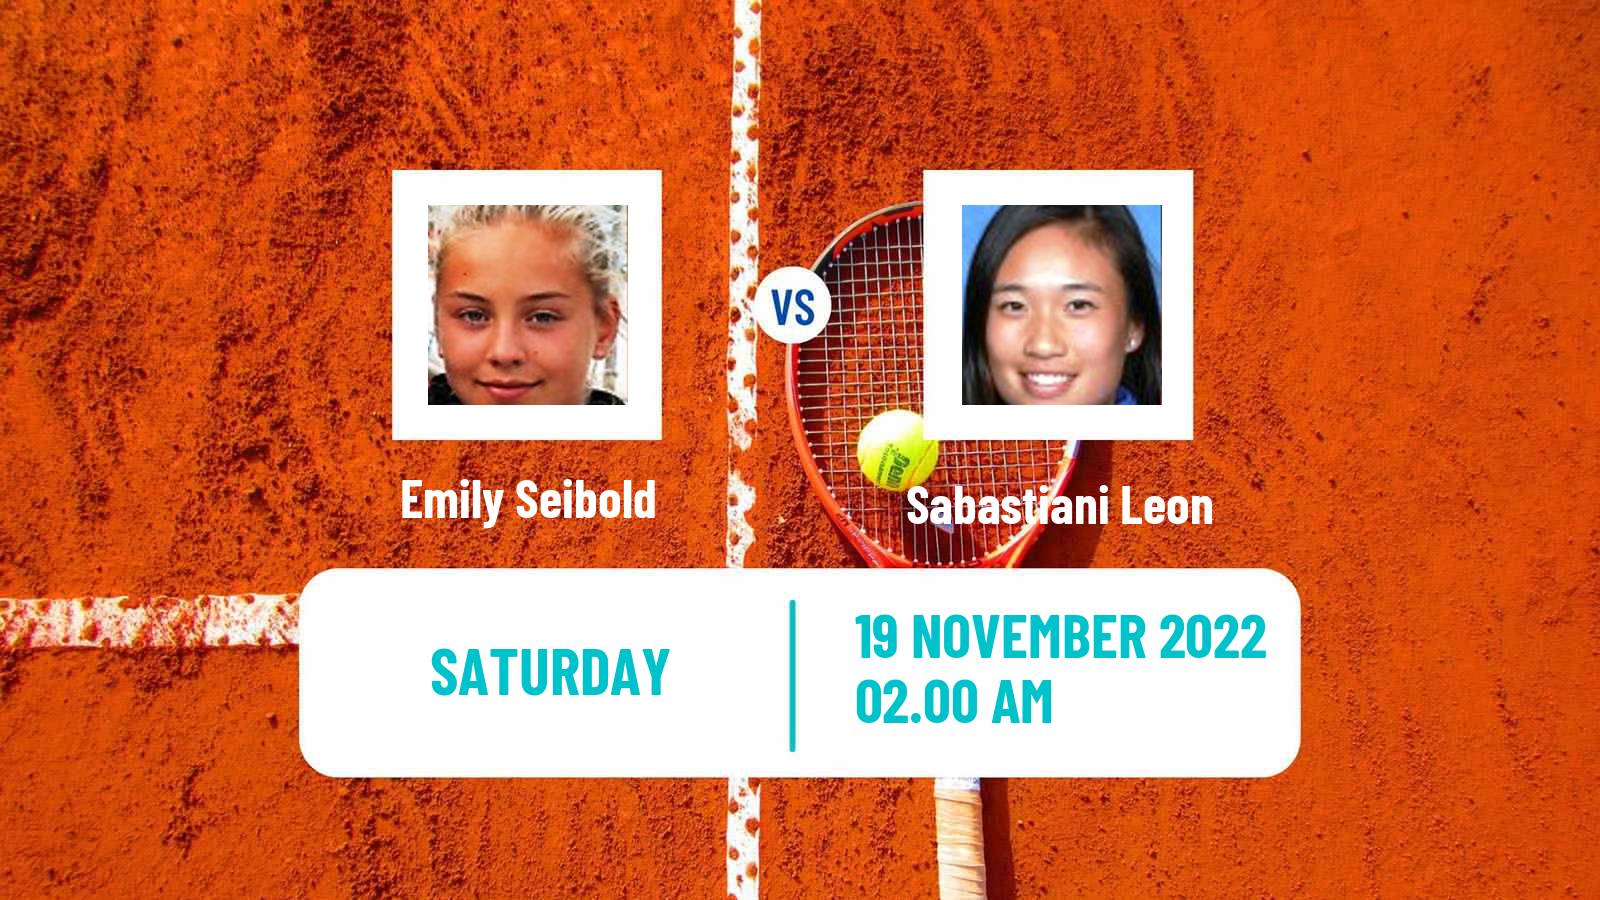 Tennis ITF Tournaments Emily Seibold - Sabastiani Leon